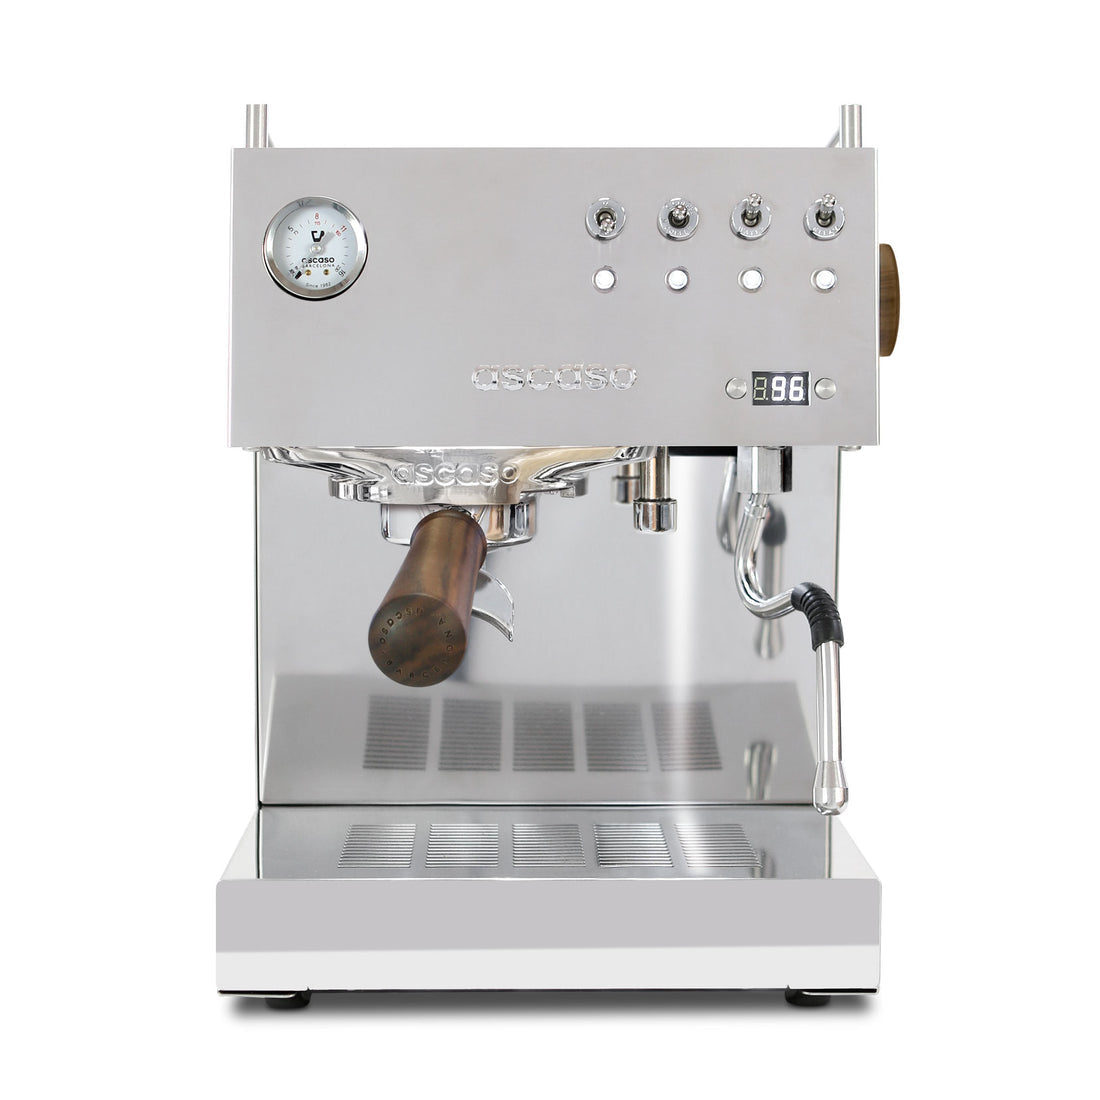 Ascaso Steel DUO Programmable Espresso Machine